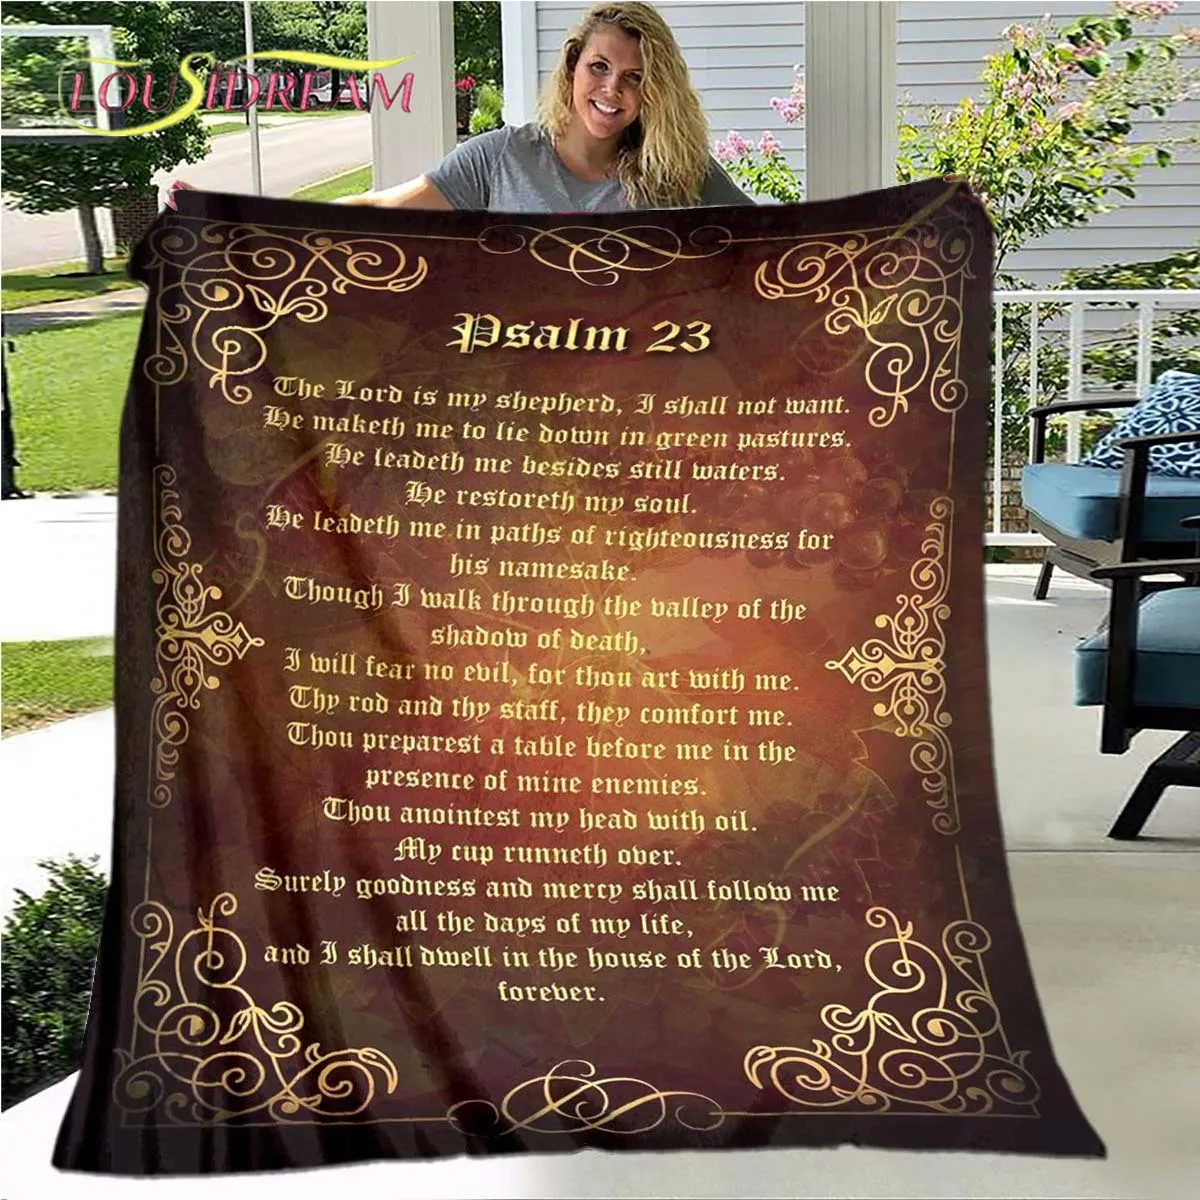 

Jesus Christ Blanket Christian Religious Faith Blanket Gifts for Women Men Throw Blanket Home Decor for Bed Couch Living Room